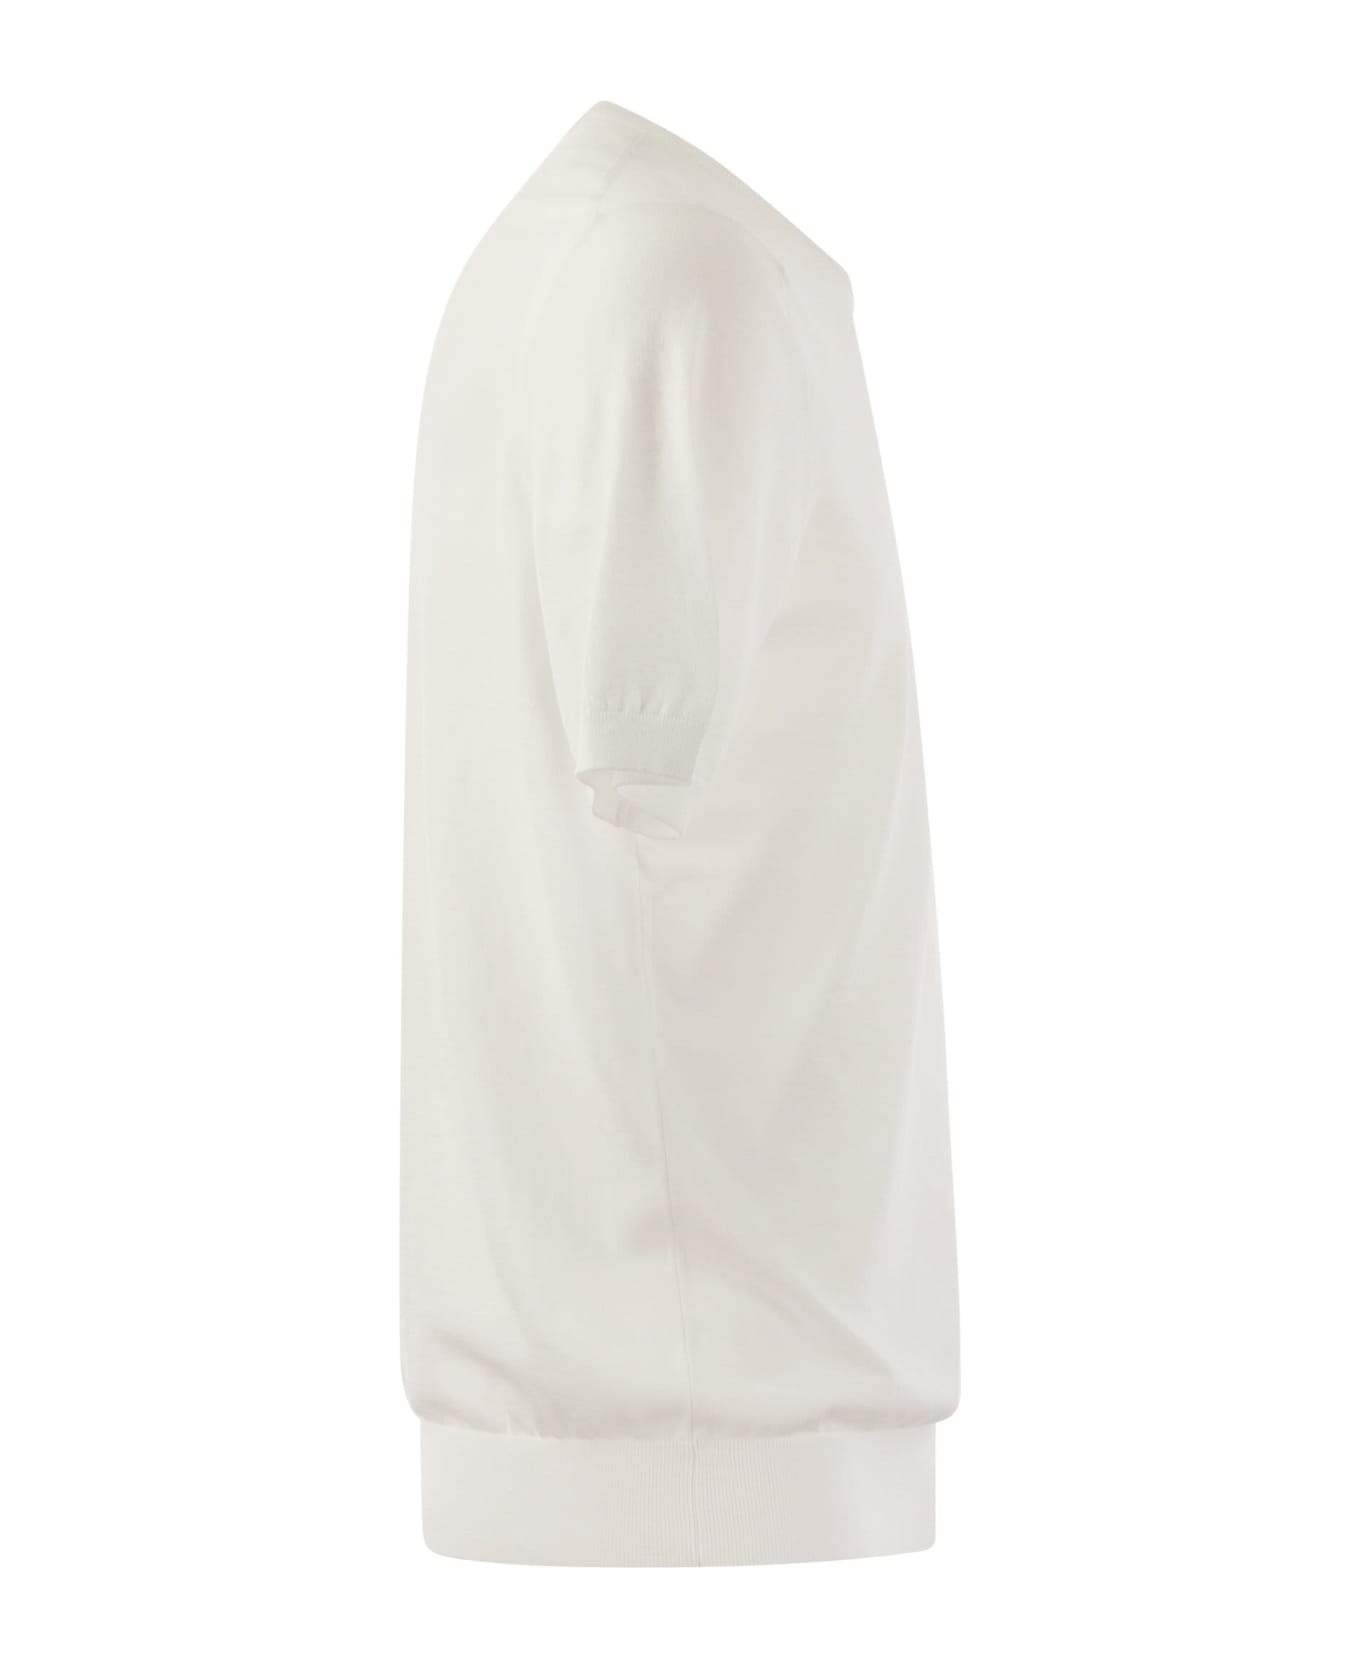 Tagliatore T-shirt In Cotton Fabric - White シャツ